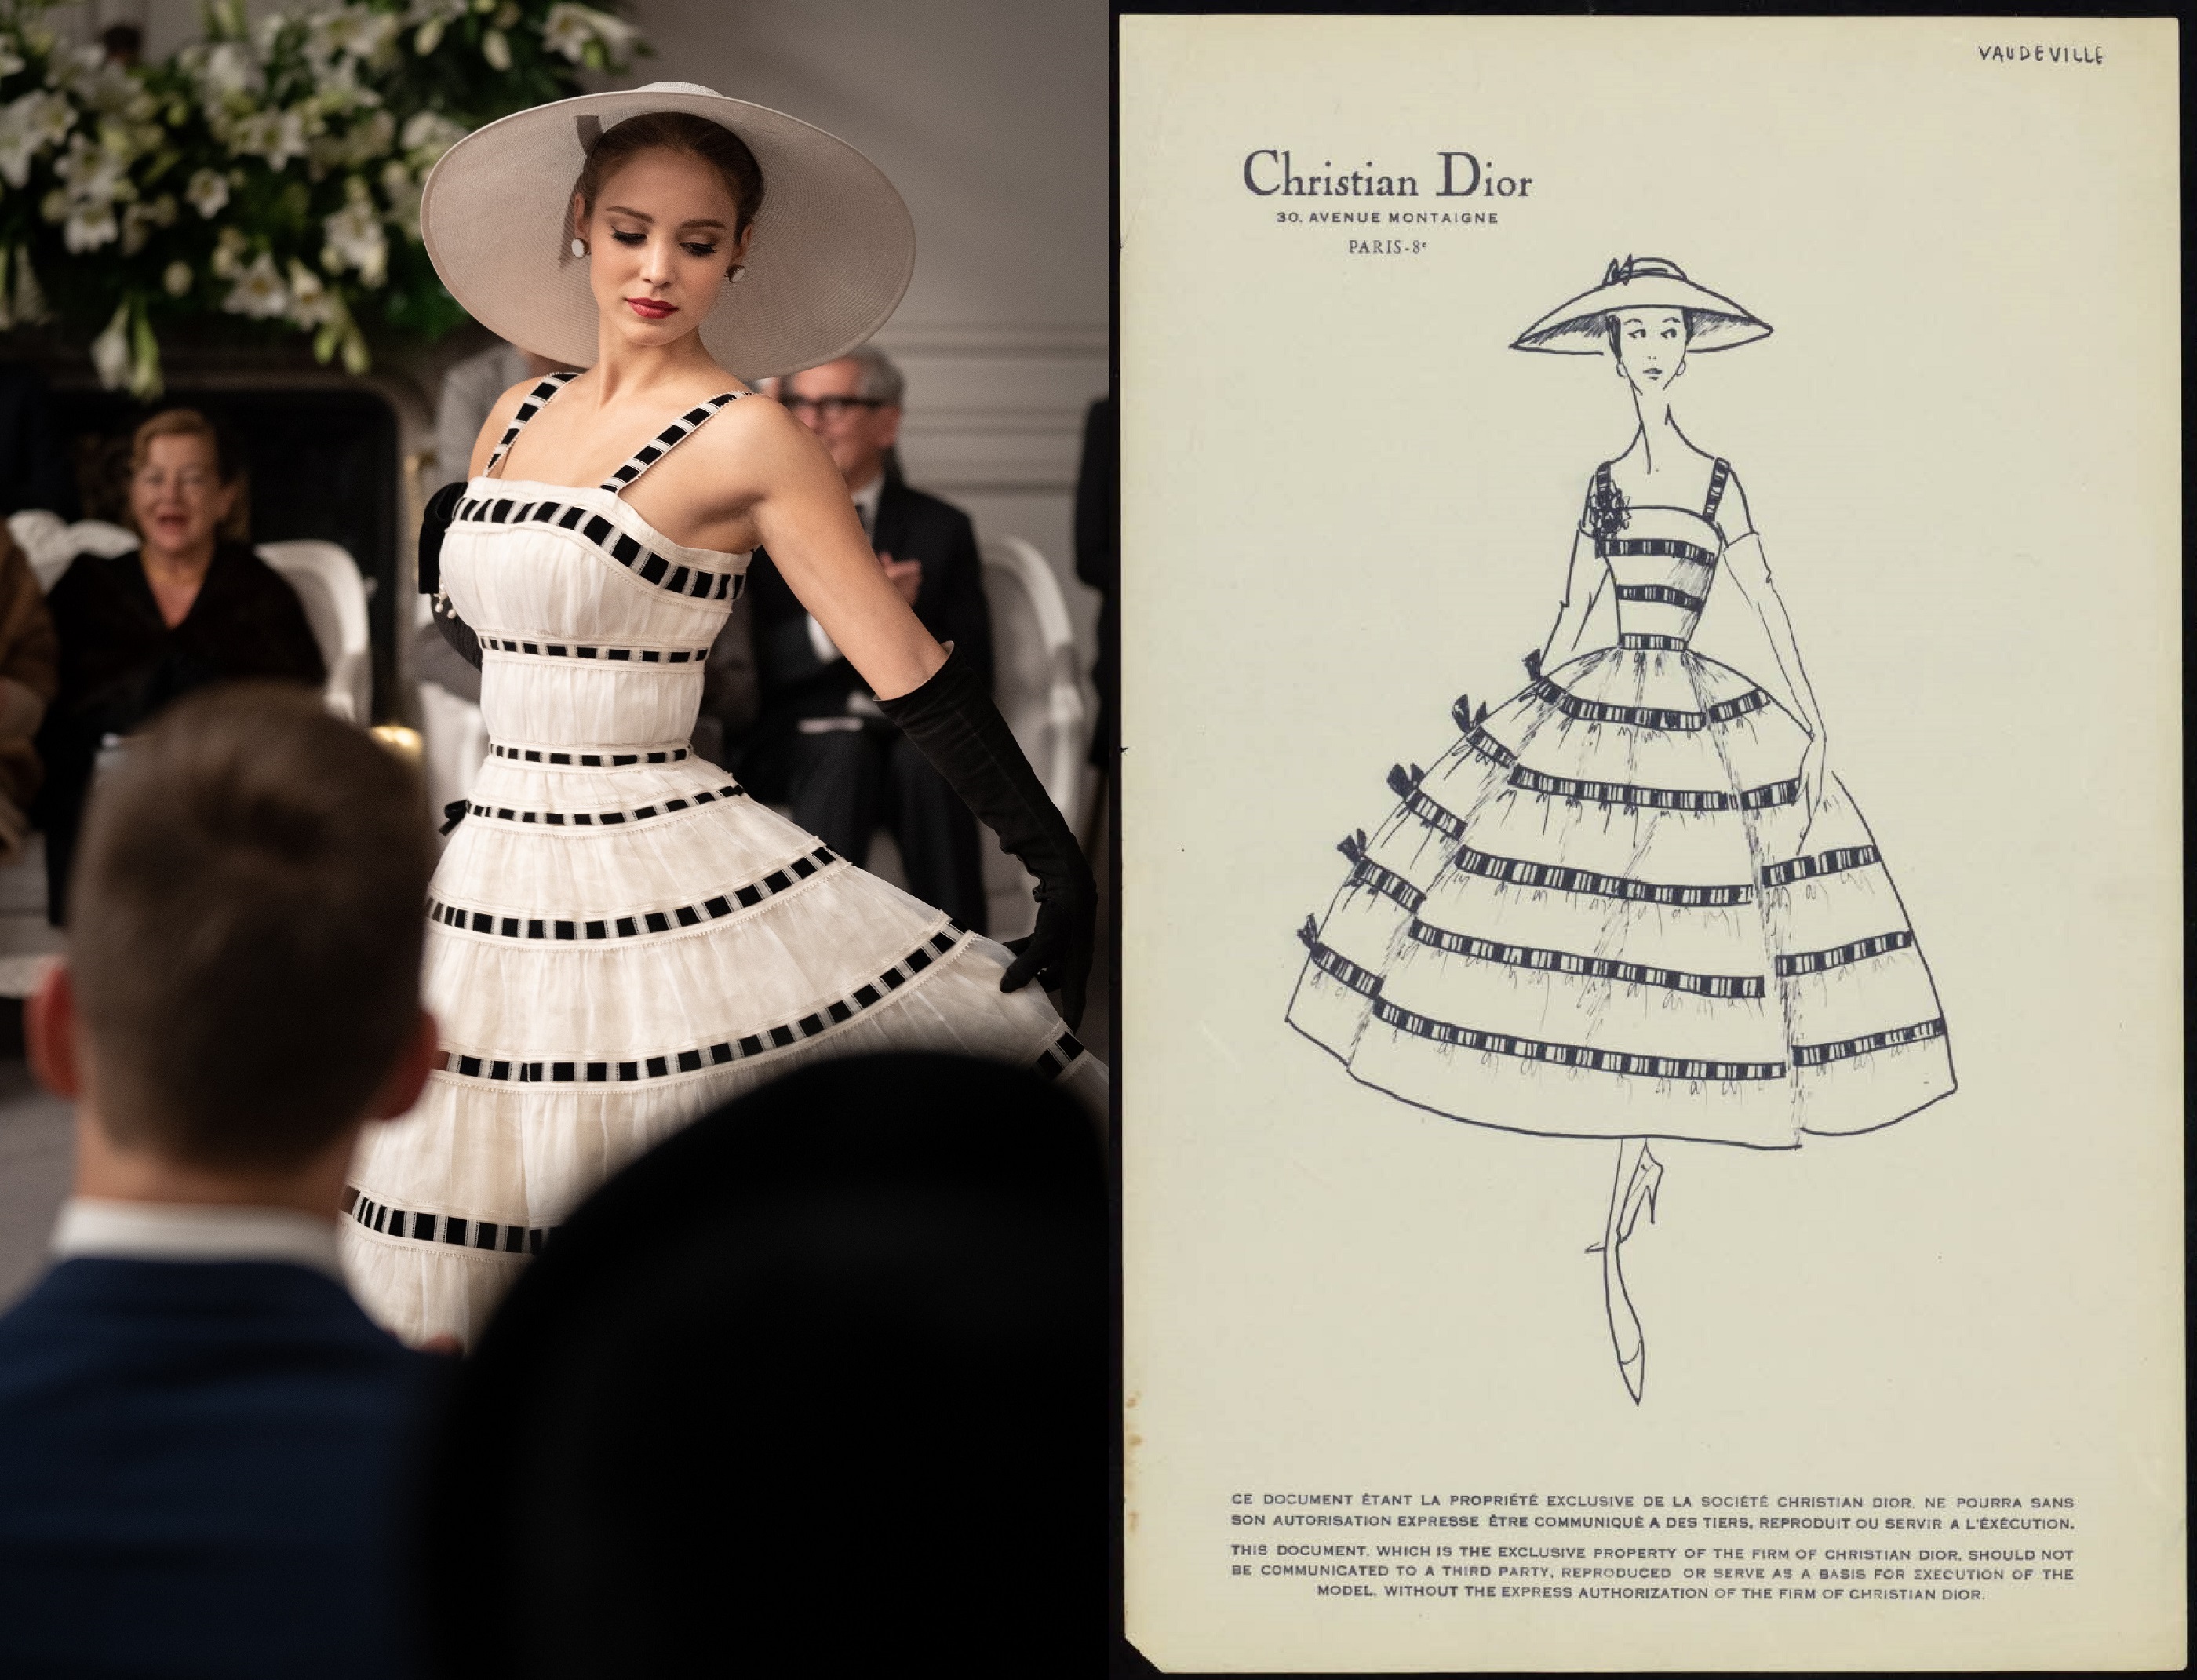 「ミセス・ハリス、パリへ行く」クリスチャン・ディオールがデザインしたドレスの写真とスケッチ画像解禁
